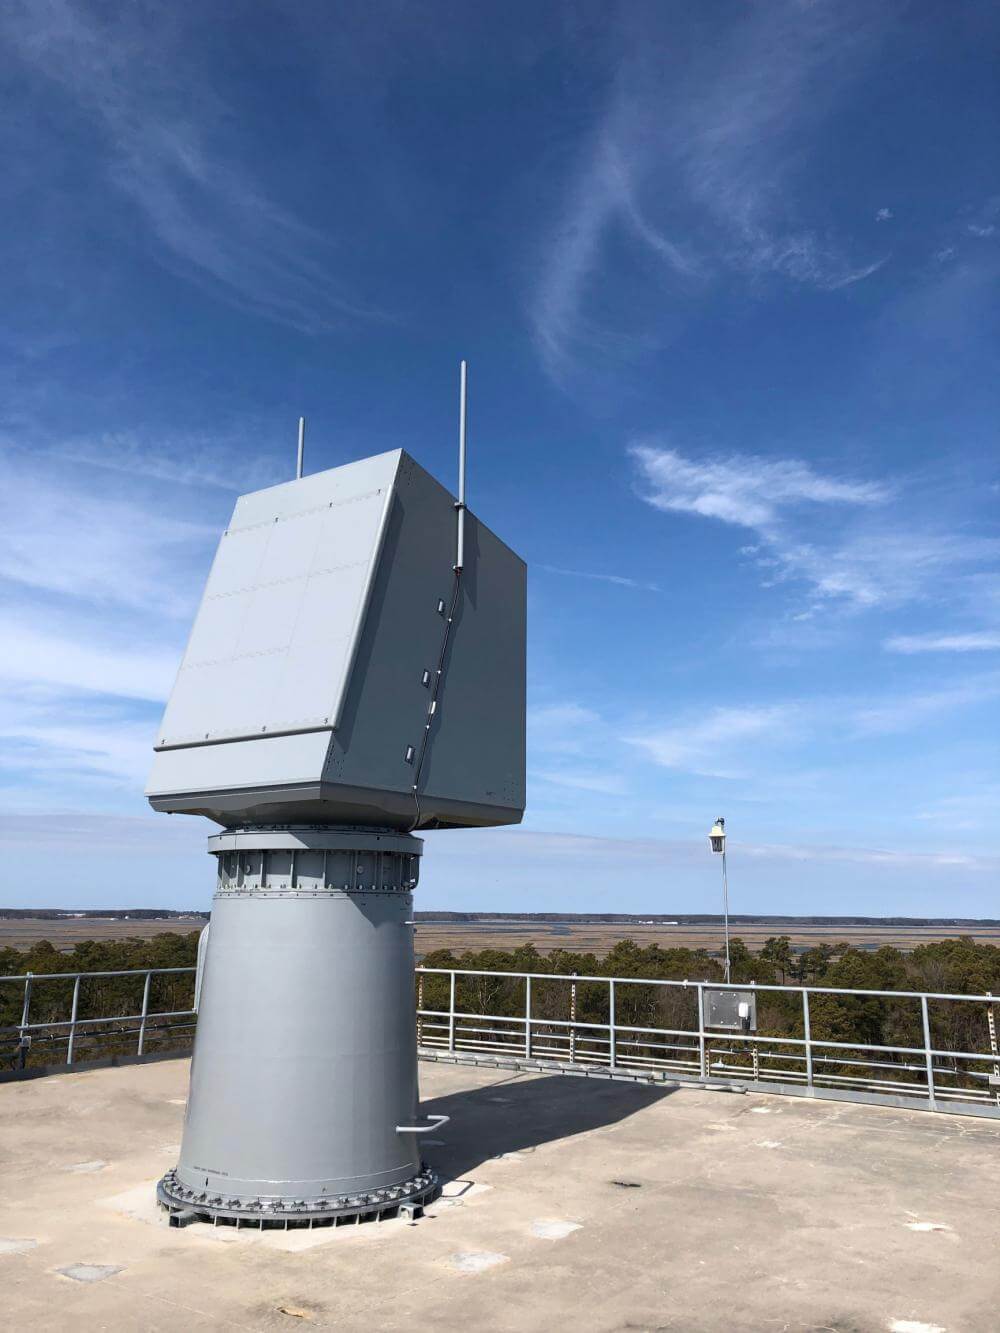 Spy-6 radar under test at Wallops Test Site in Virginia.